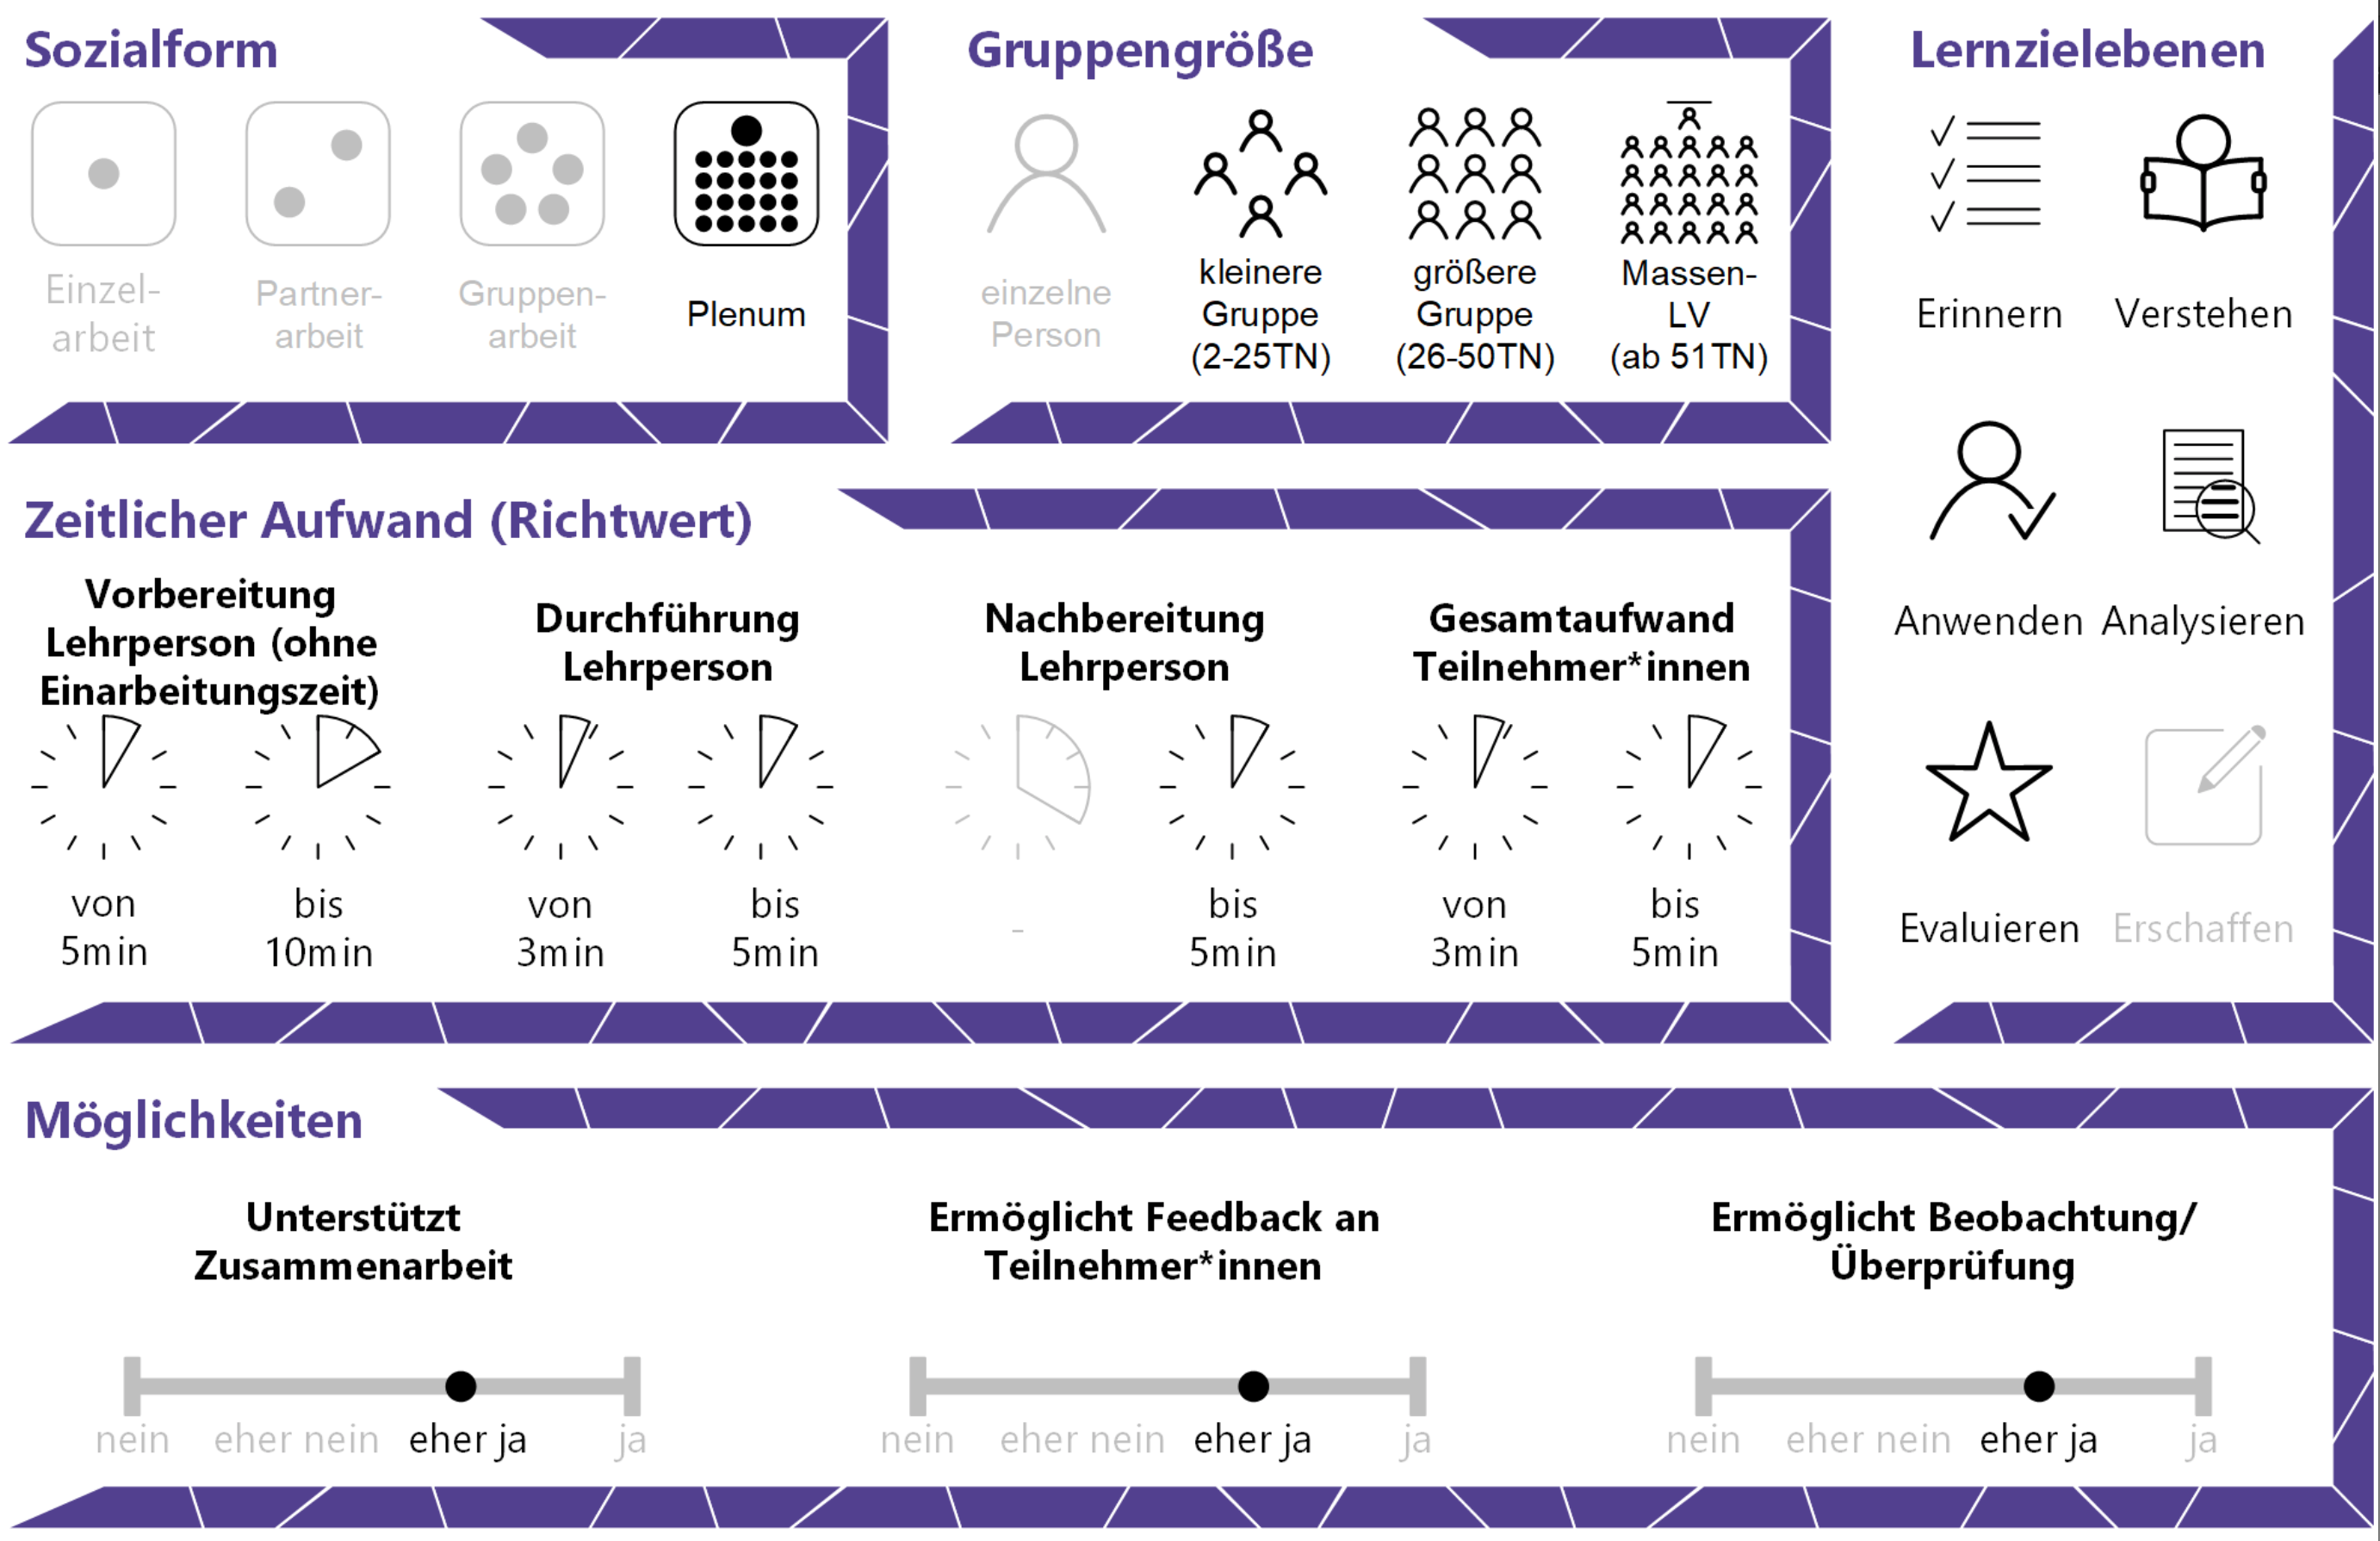 Allgemeine Eckdaten zum Use Case, dargestellt mit Icons – CC BY 4.0 Steirische Hochschulkonferenz